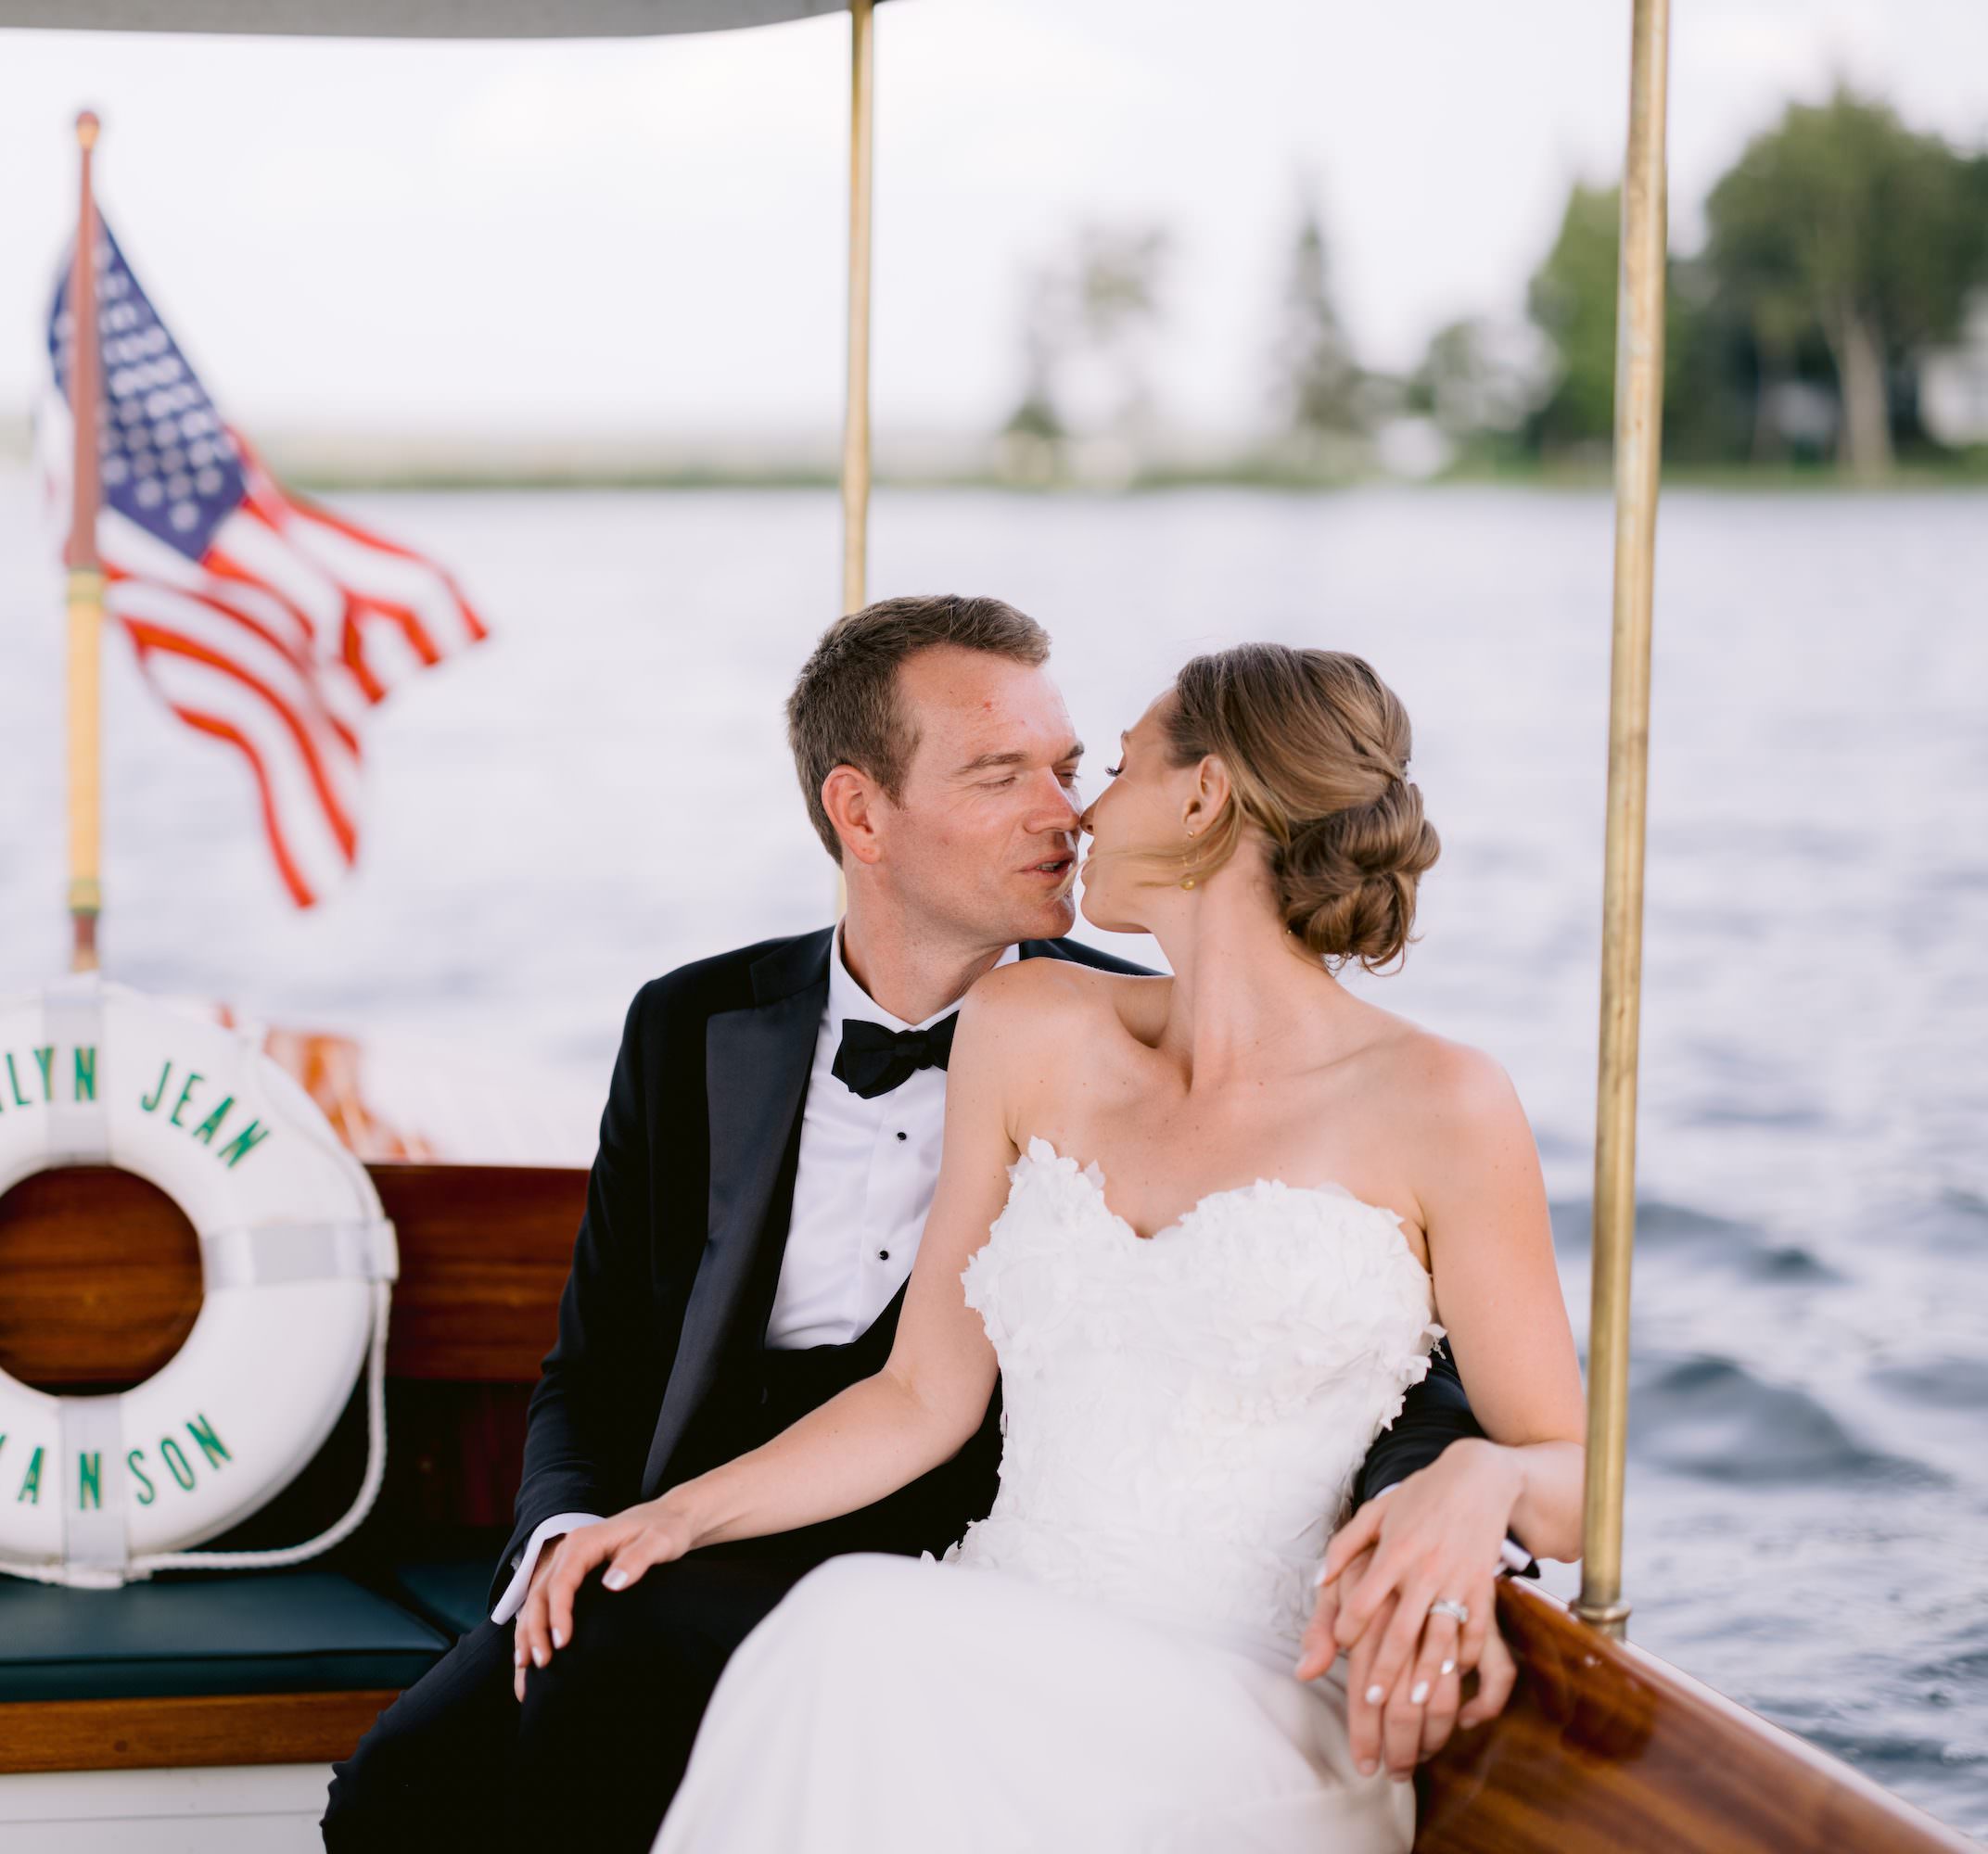 Newlyweds kiss on northern michigan wedding boat ride